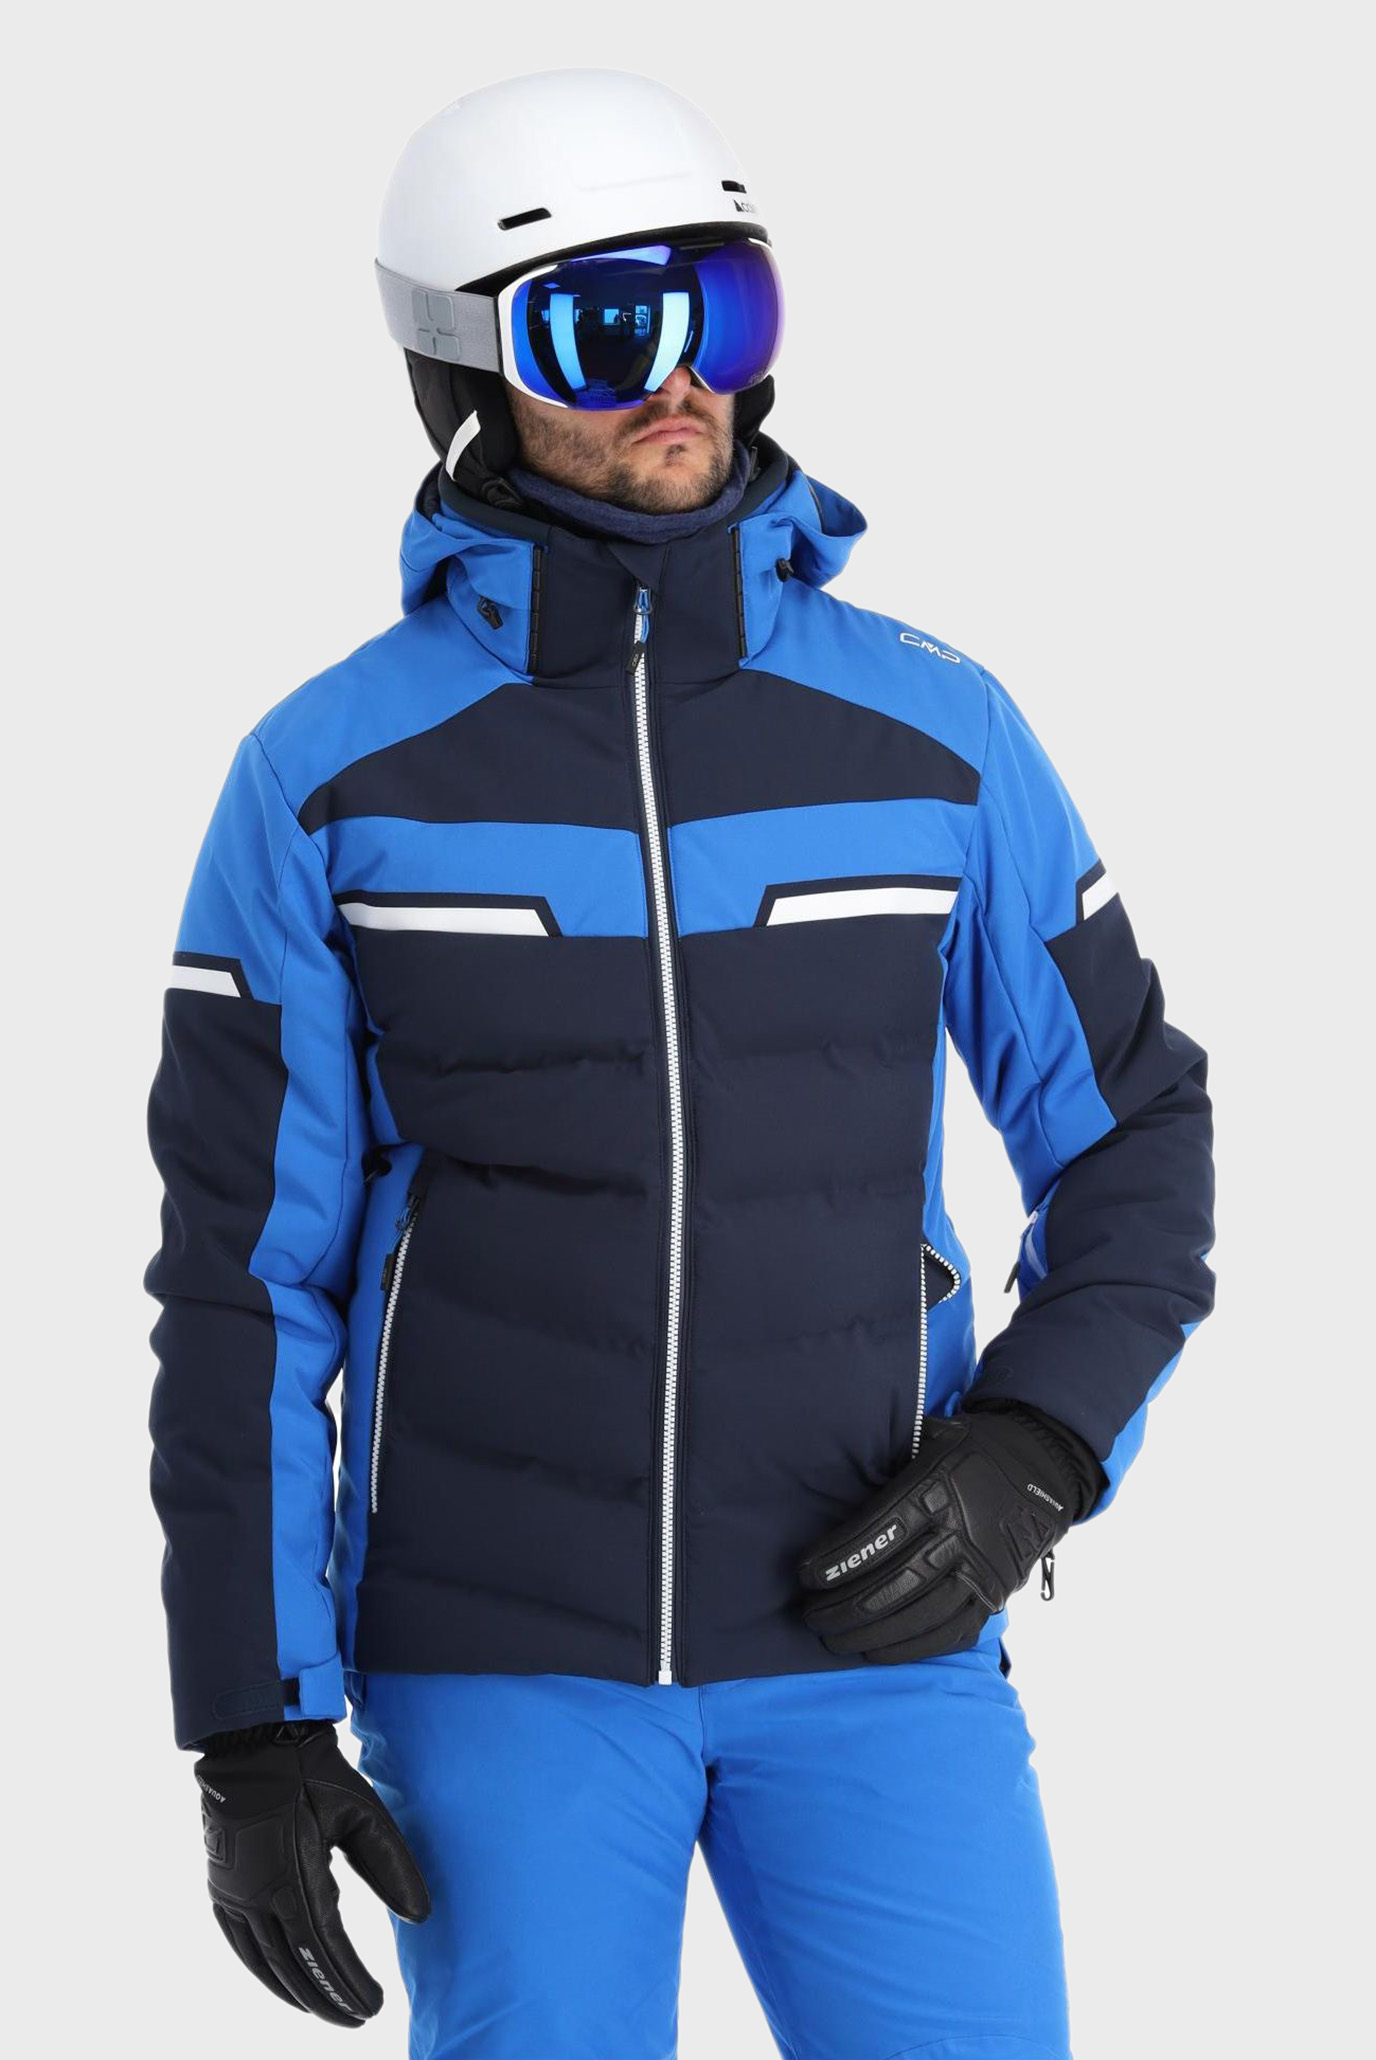 Мужская темно-синяя лыжная куртка 1